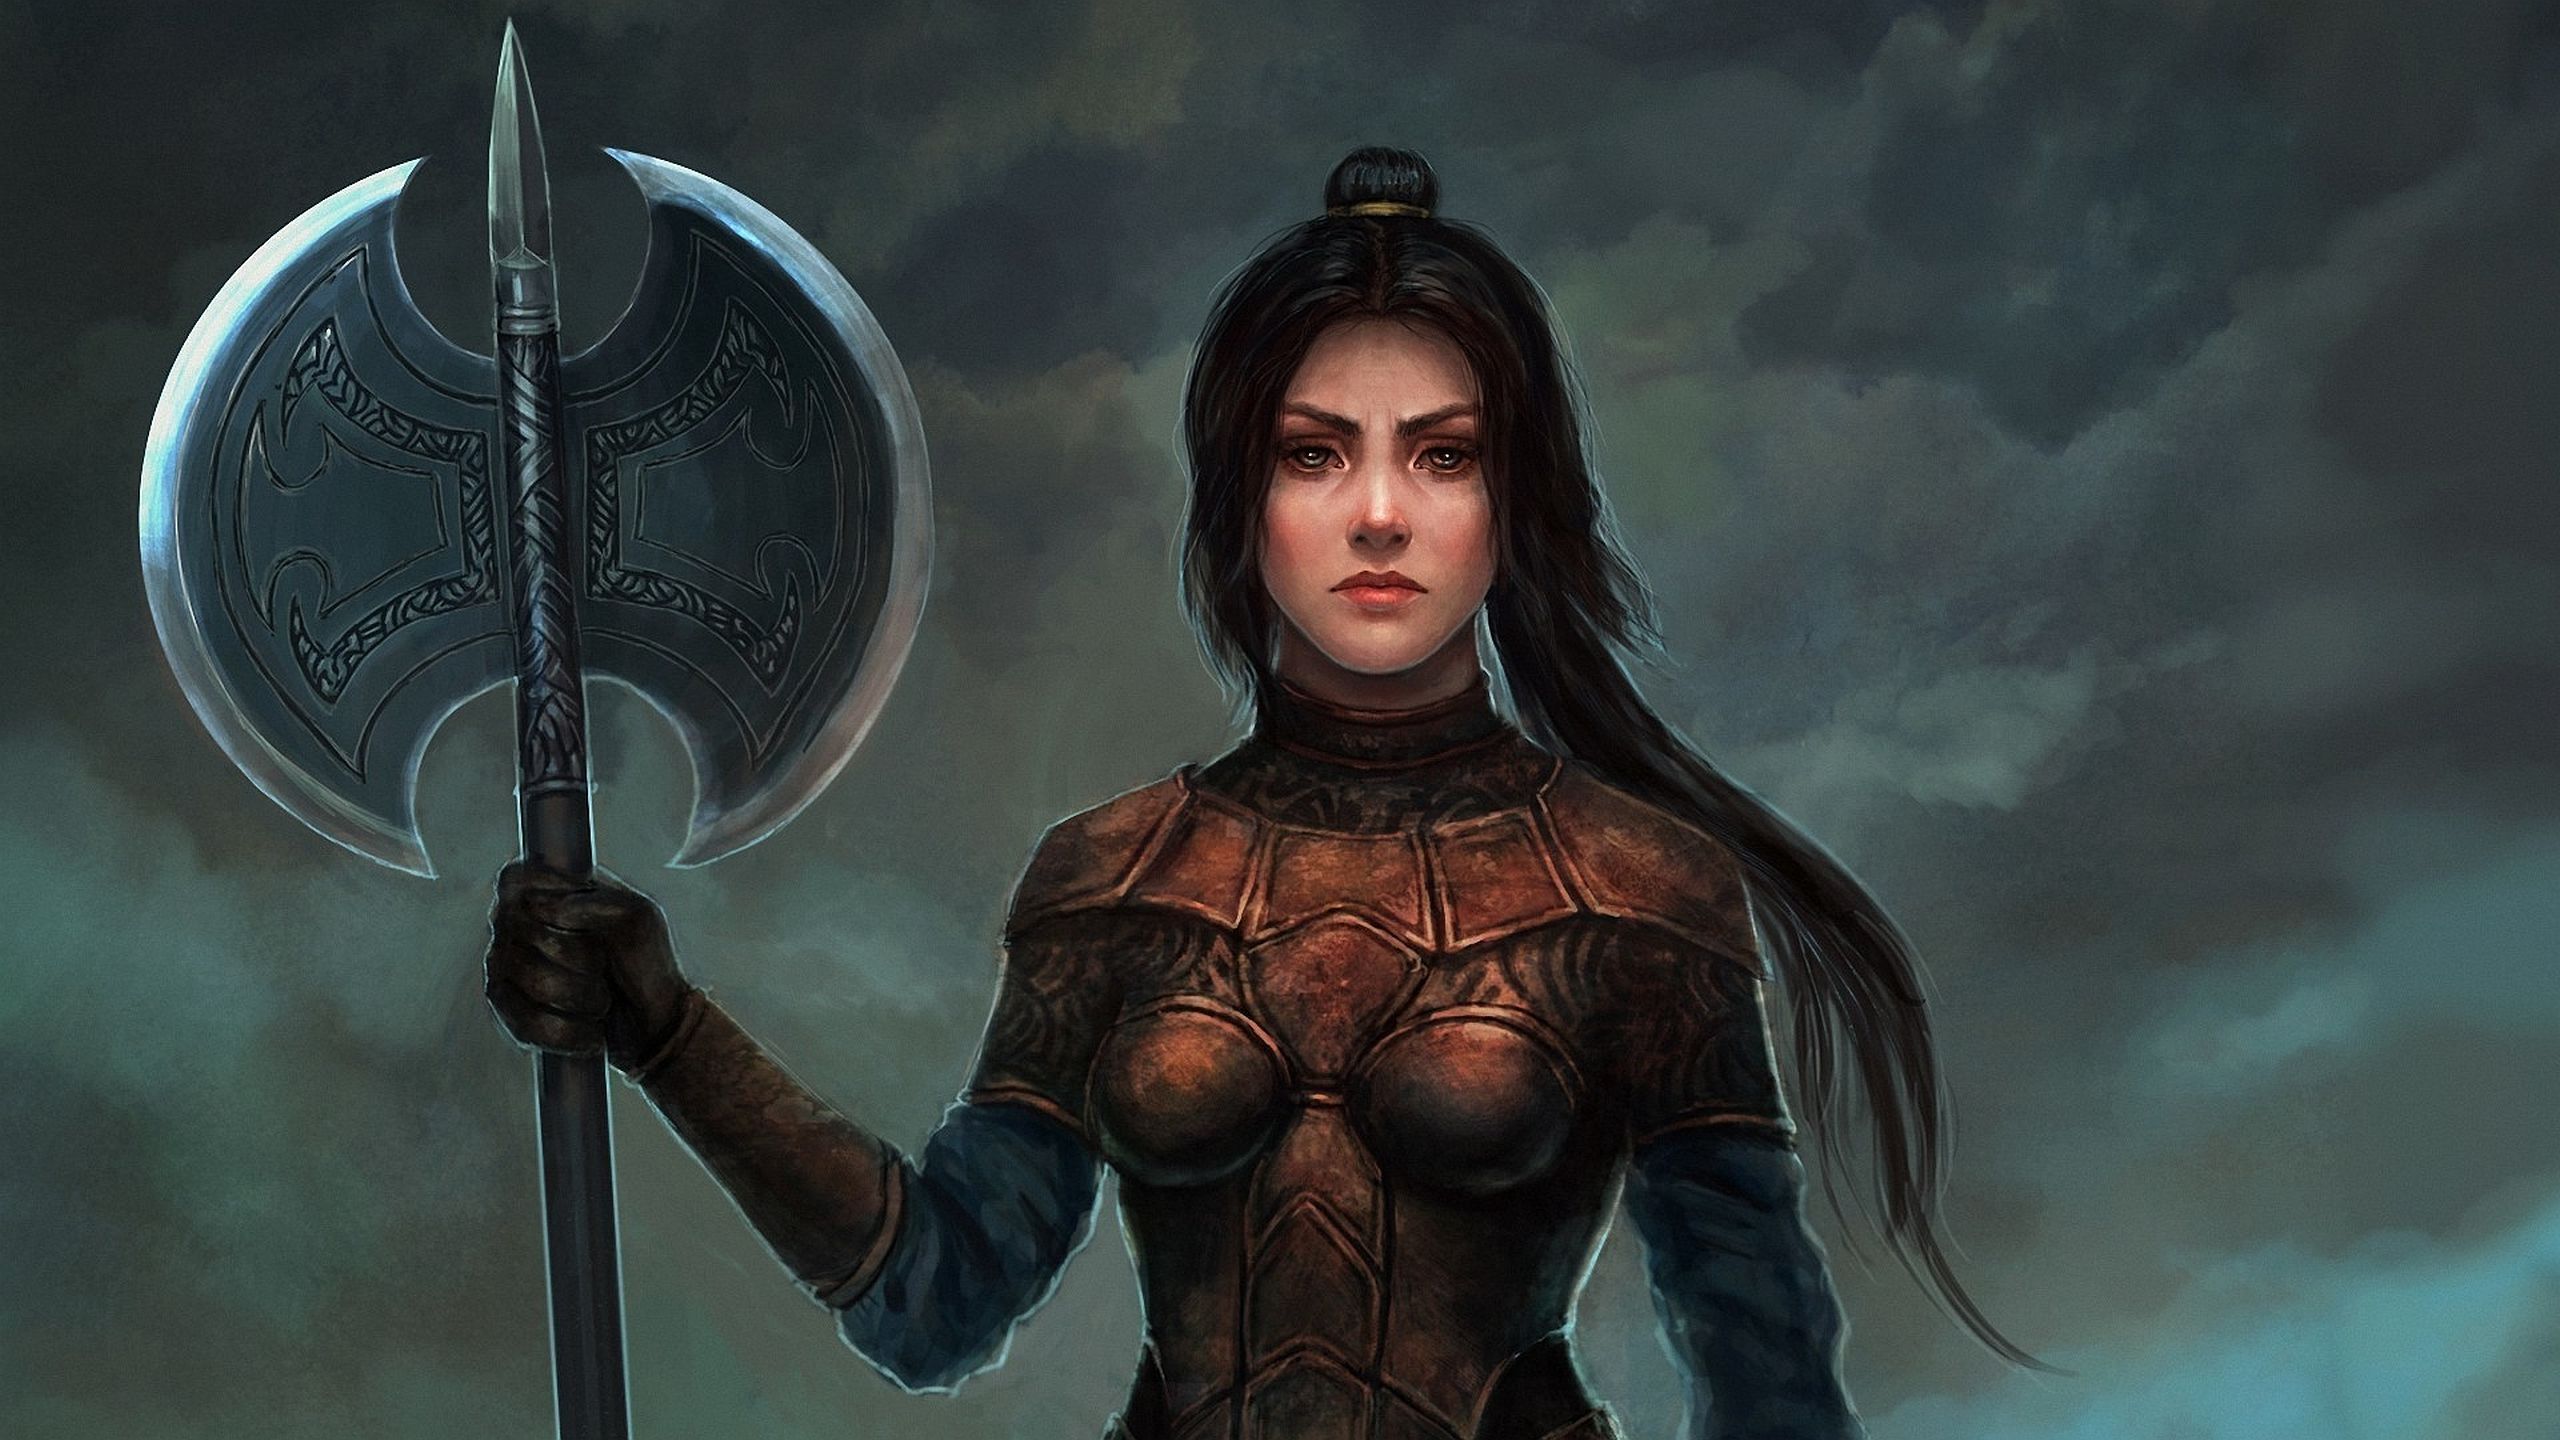 Fantasy Woman Armor Woman Warrior Axe Black Hair Wallpaper:2560x1440